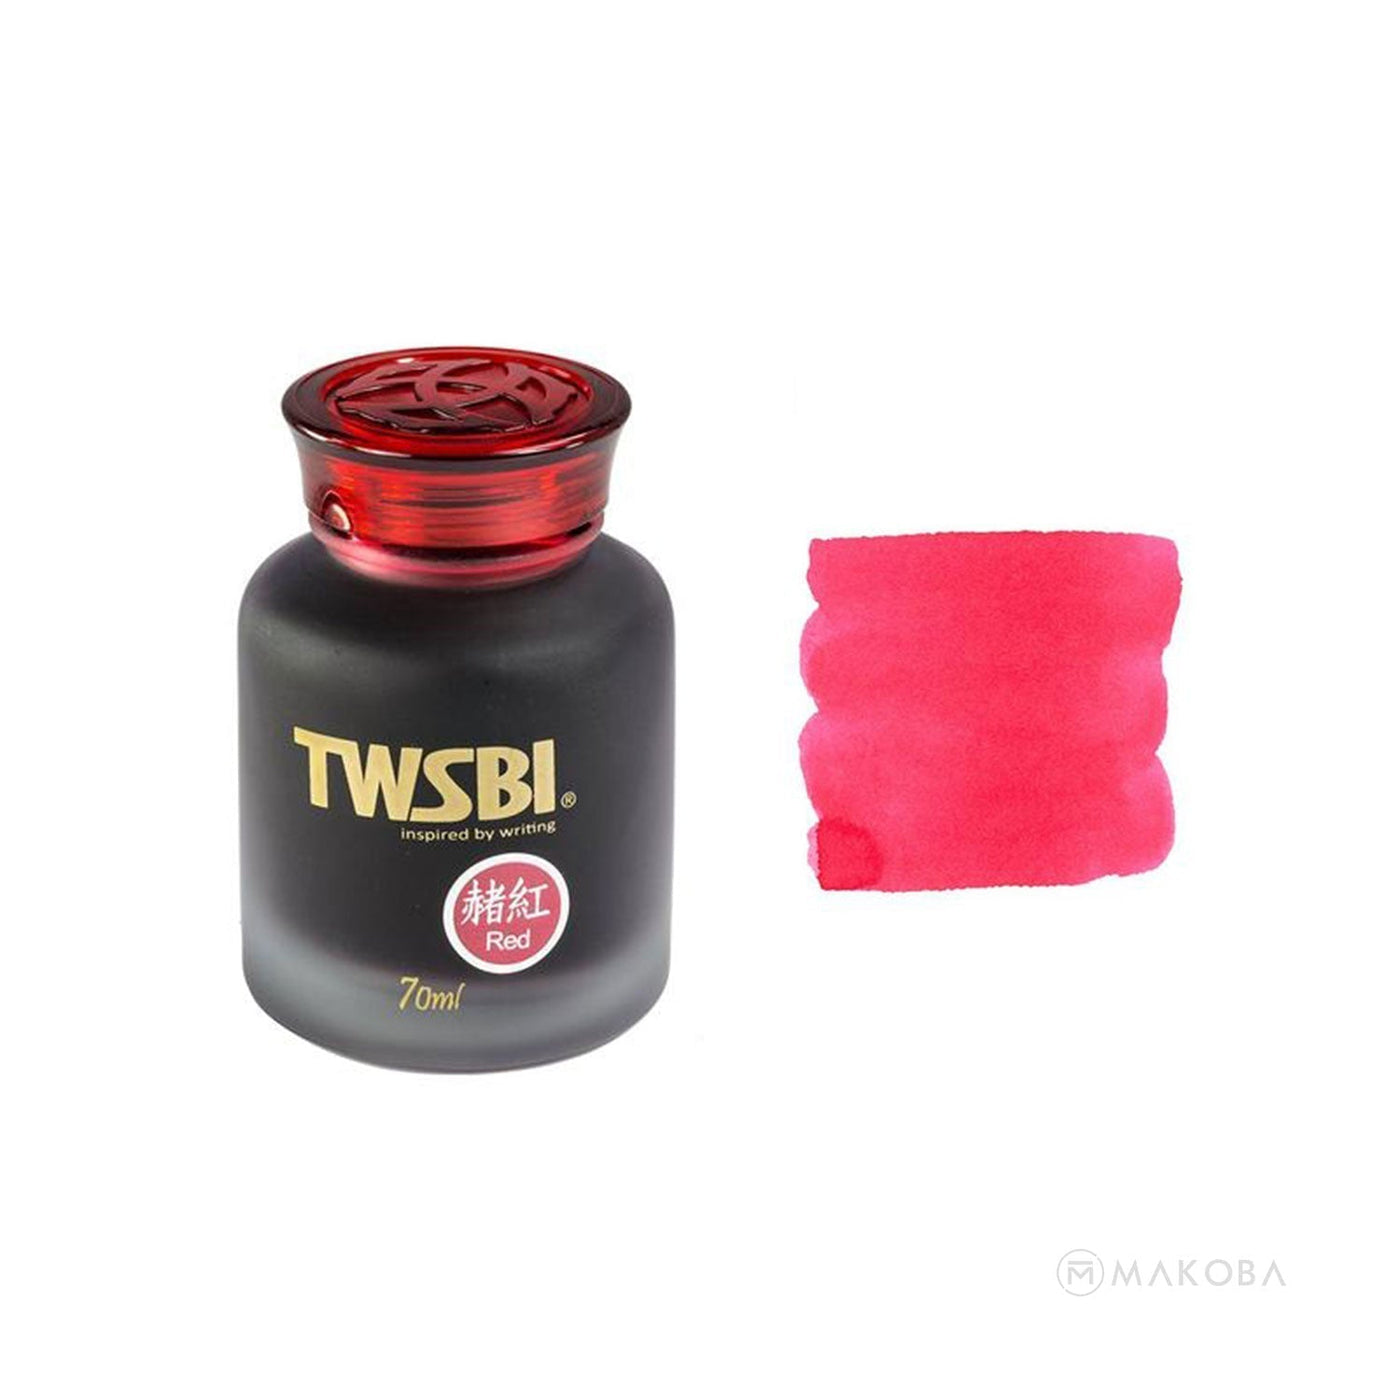 TWSBI Ink Bottle, Red - 70ml